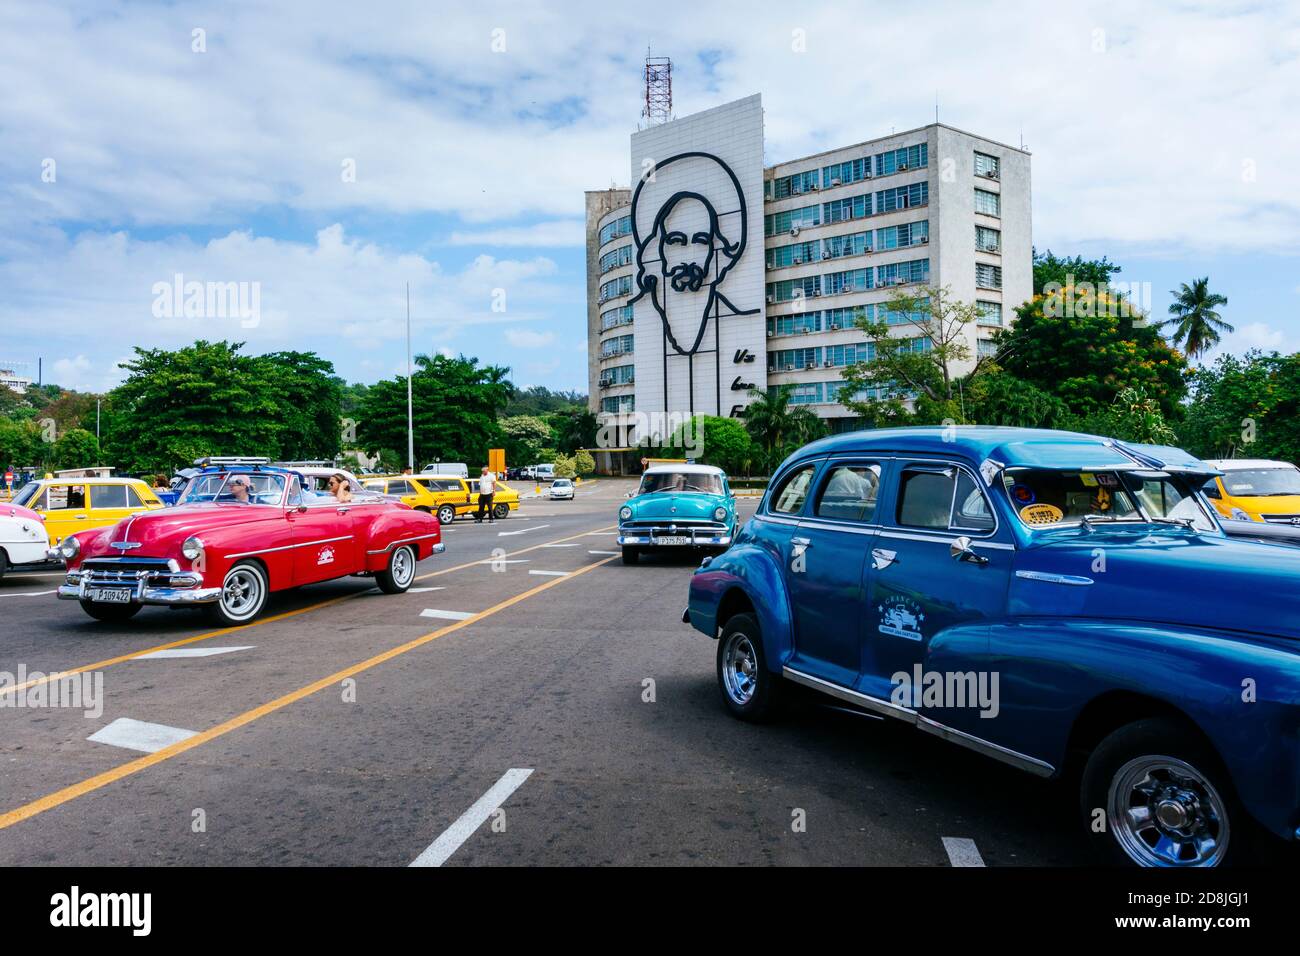 Voitures anciennes, taxis, garés sur la place de la Révolution - Plaza de la revolución. En arrière-plan le Musée postal Numismatique de Cuba avec l'image o Banque D'Images